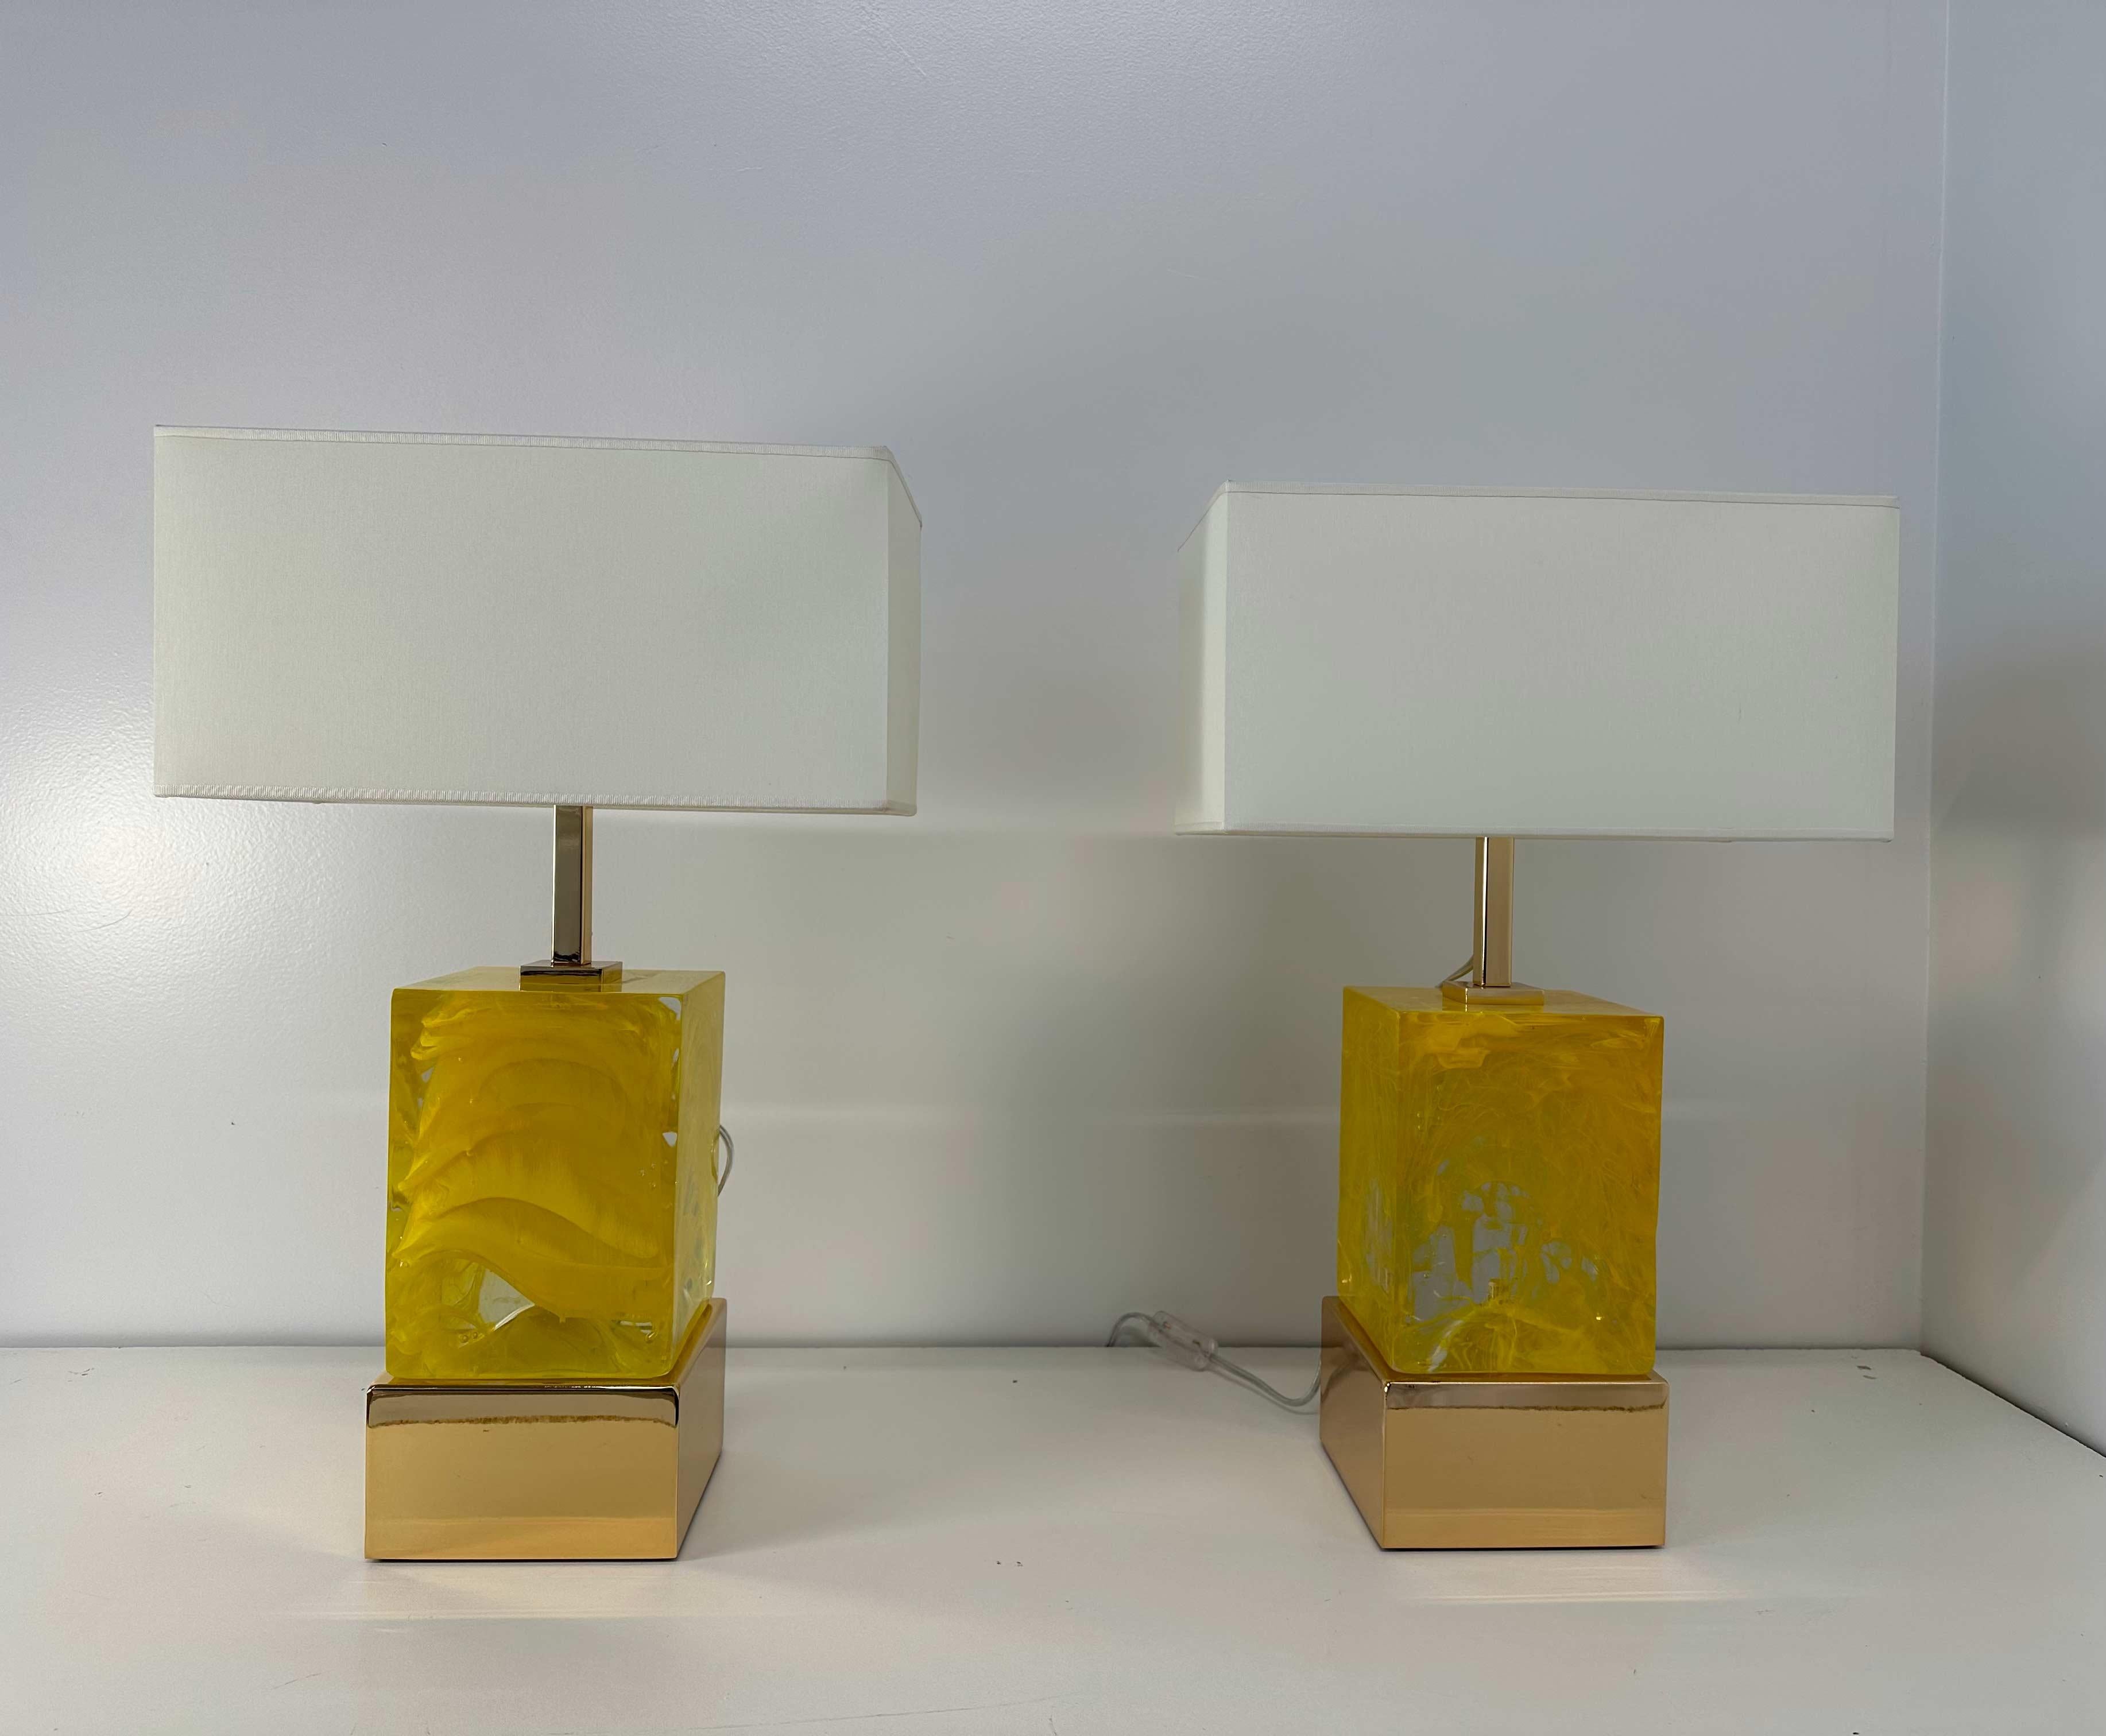 Cette paire de lampes de style Art déco a été produite à Murano dans les années 2000. 
La base et la partie supérieure sont en laiton galvanisé doré, tandis que le corps central est un cube de verre de Murano transparent et jaune. L'abat-jour, blanc